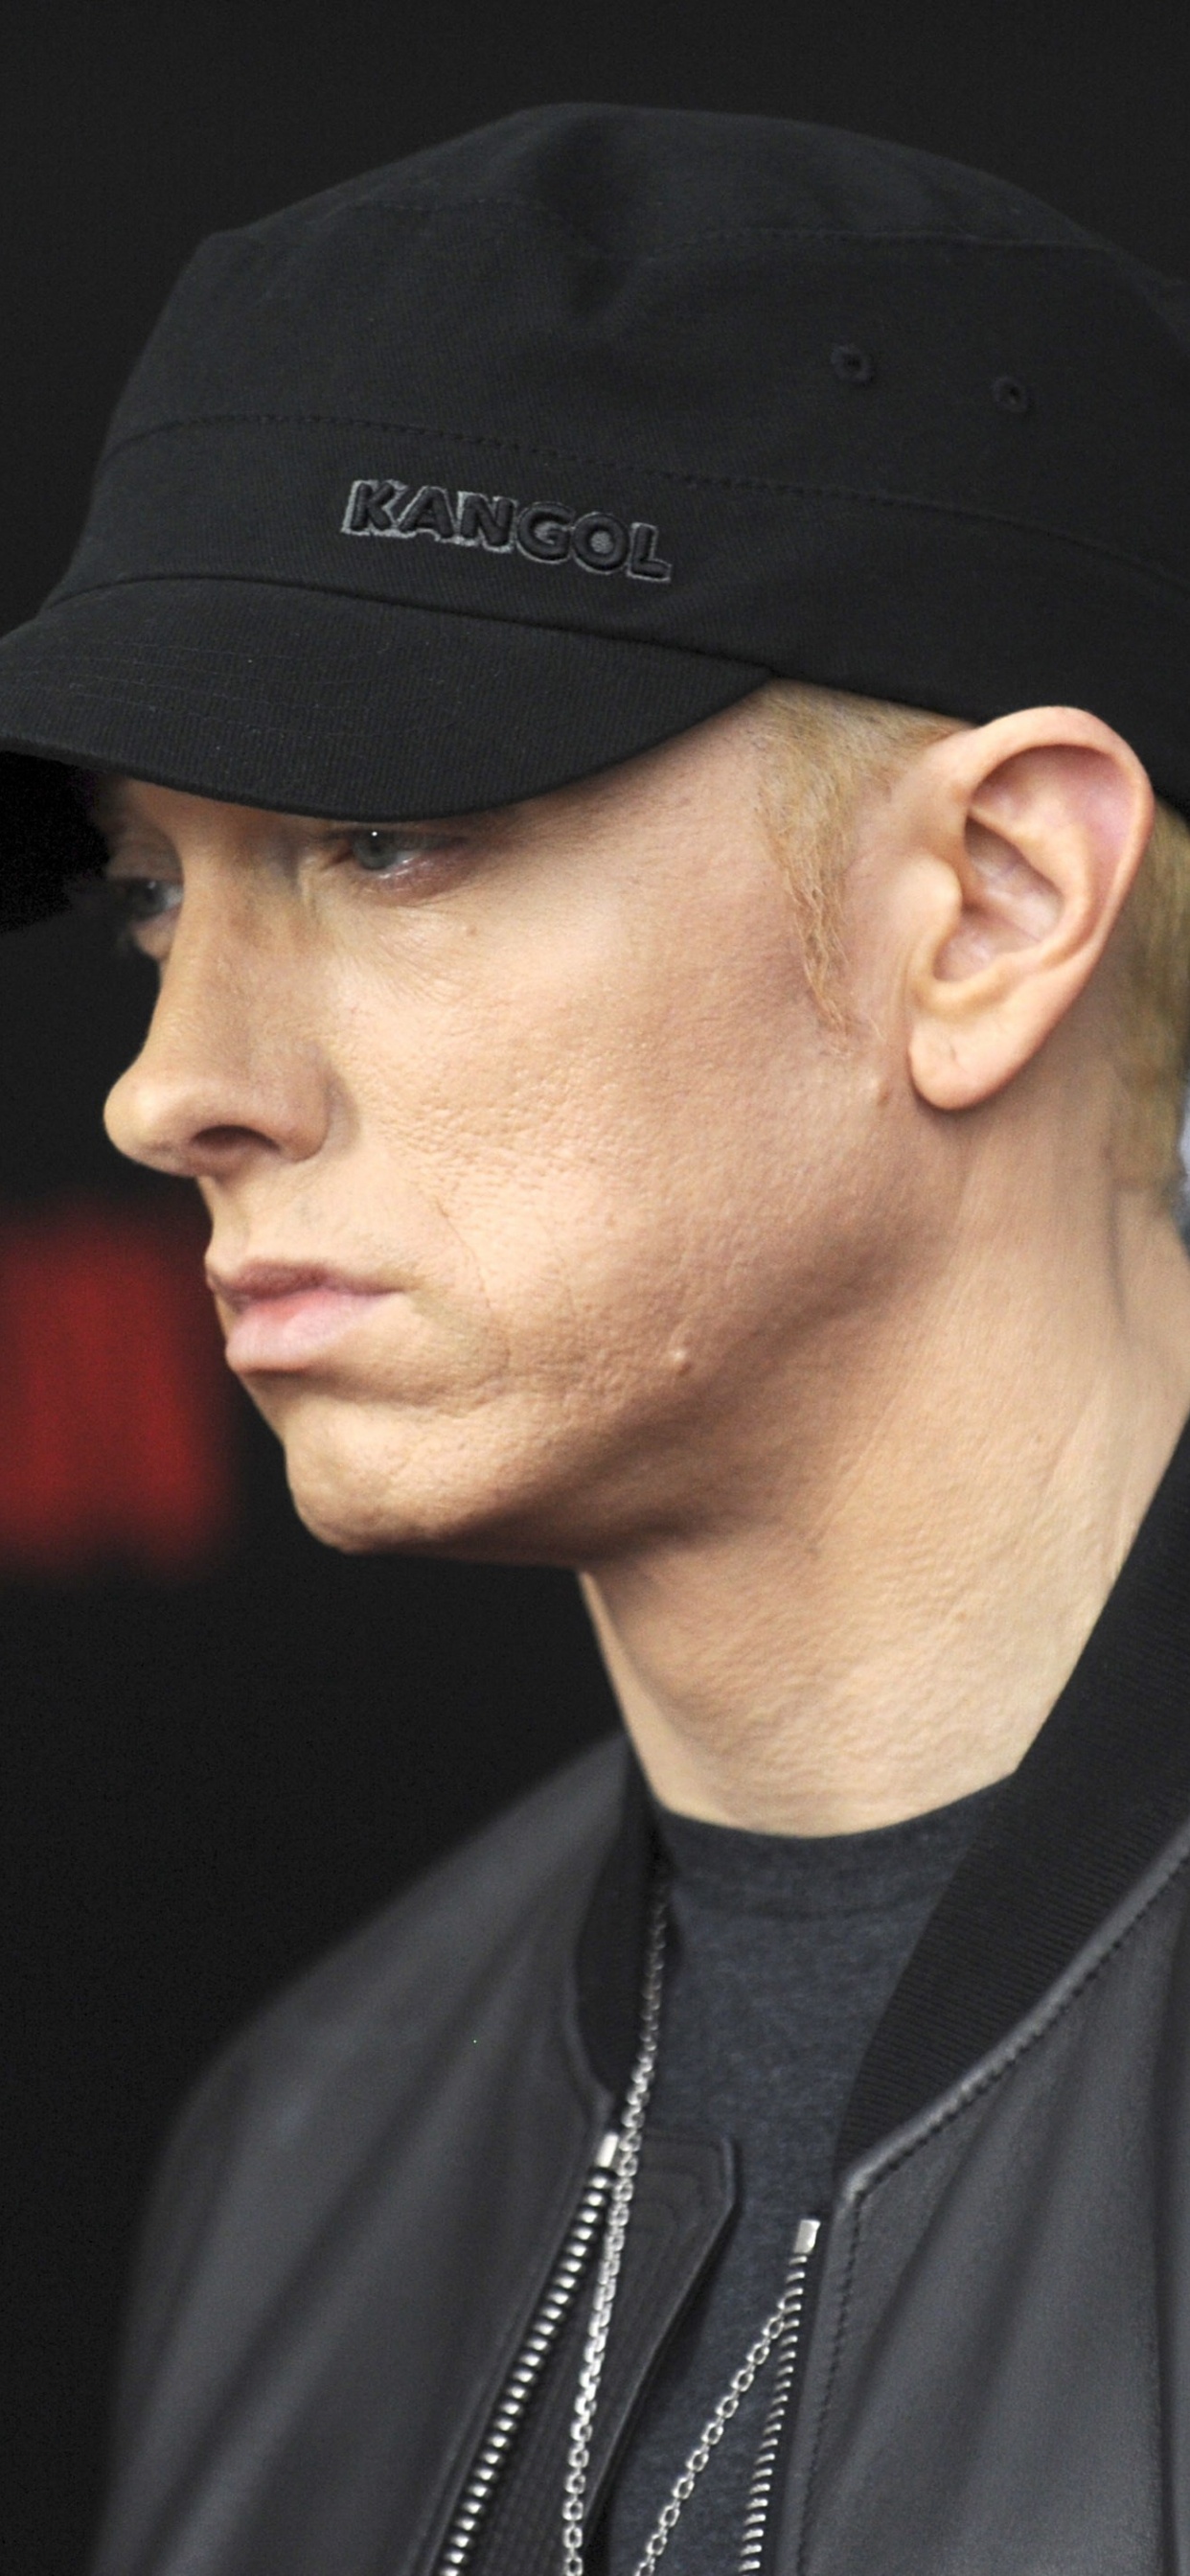 Eminem, Rapper, Hip-hop-Musik, Cool, Kappe. Wallpaper in 1242x2688 Resolution